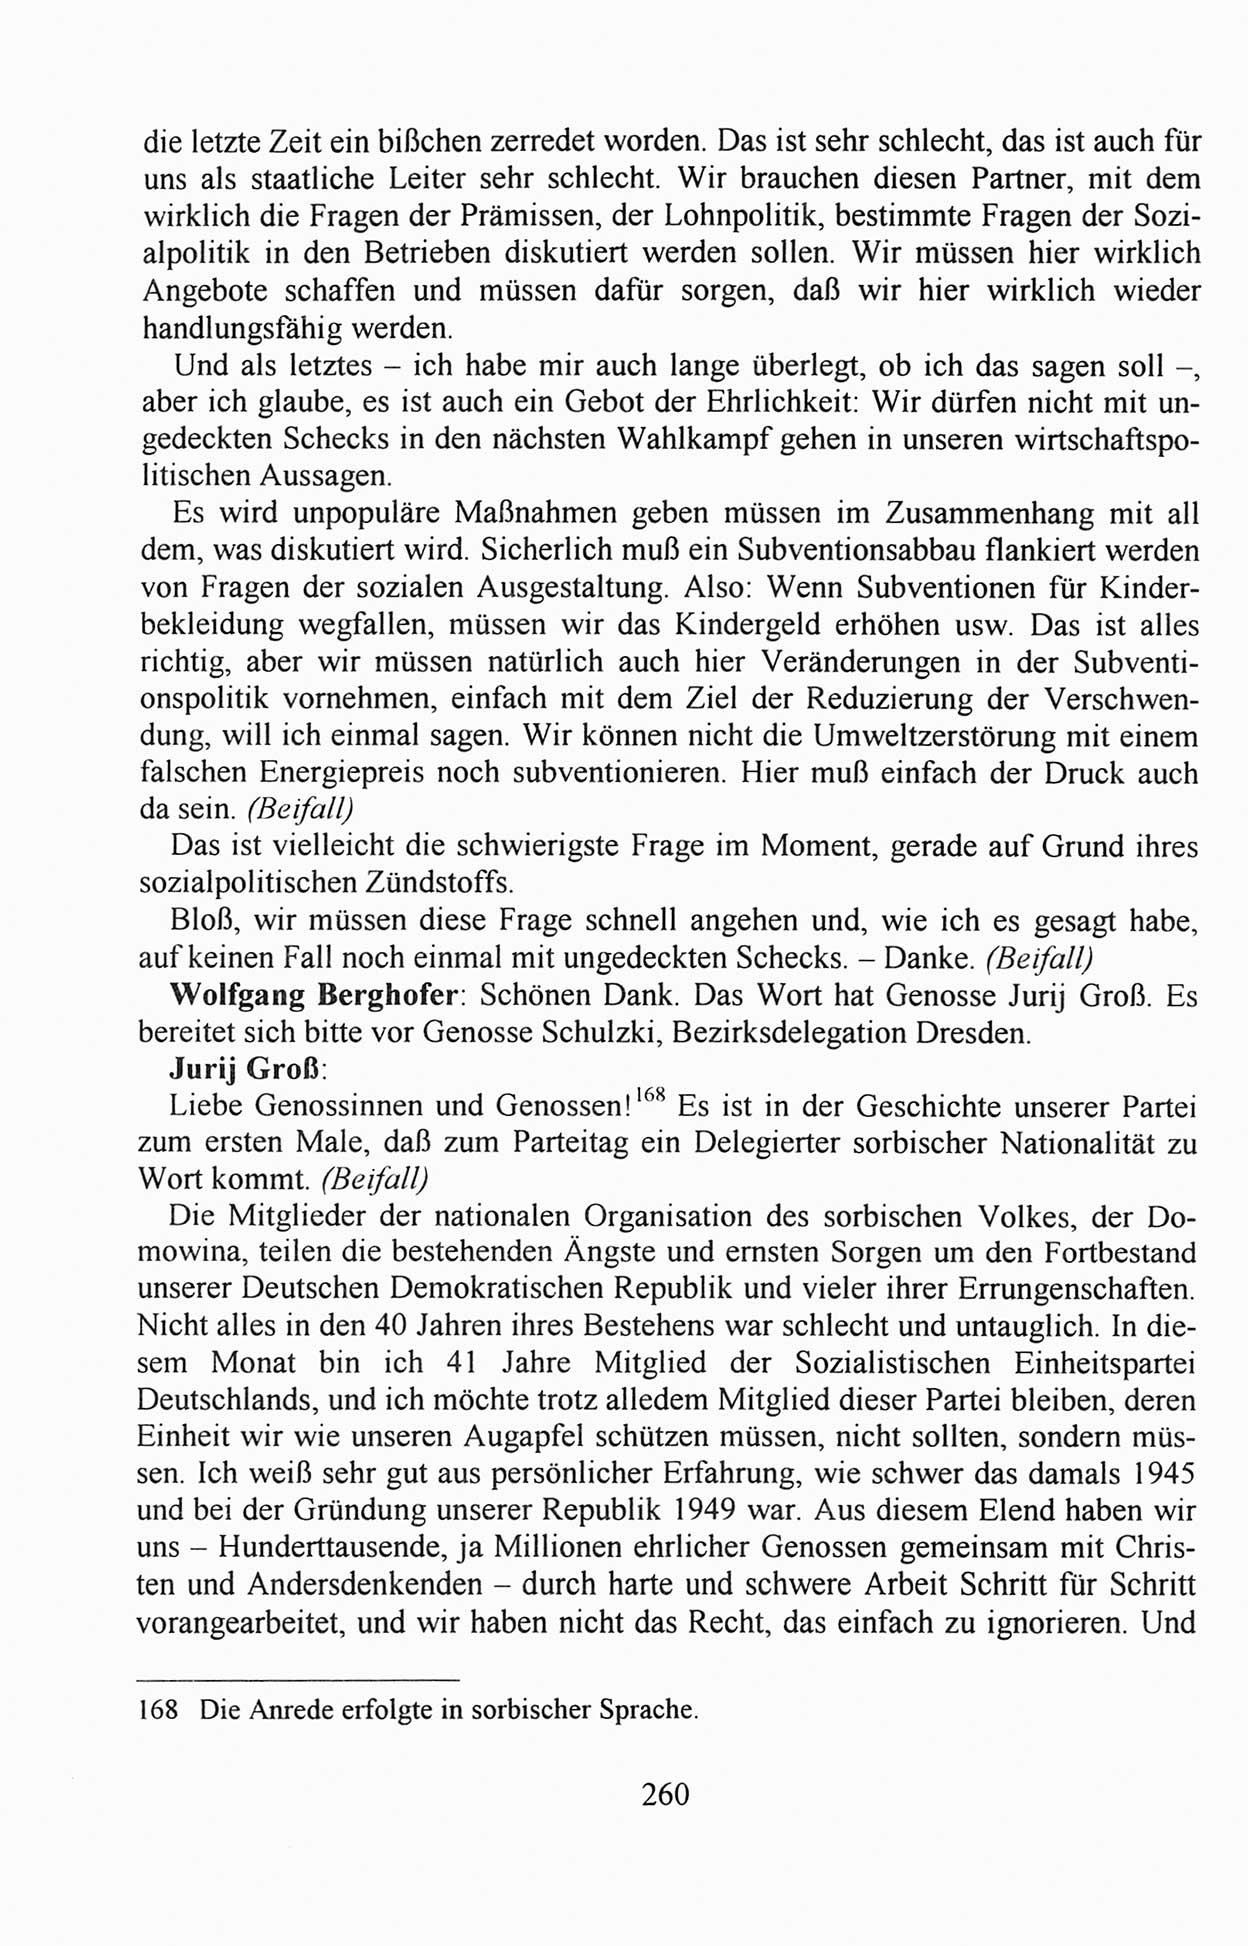 Außerordentlicher Parteitag der SED/PDS (Sozialistische Einheitspartei Deutschlands/Partei des Demokratischen Sozialismus) [Deutsche Demokratische Republik (DDR)], Protokoll der Beratungen am 8./9. und 16./17.12.1989 in Berlin 1989, Seite 260 (PT. SED/PDS DDR Prot. 1989, S. 260)